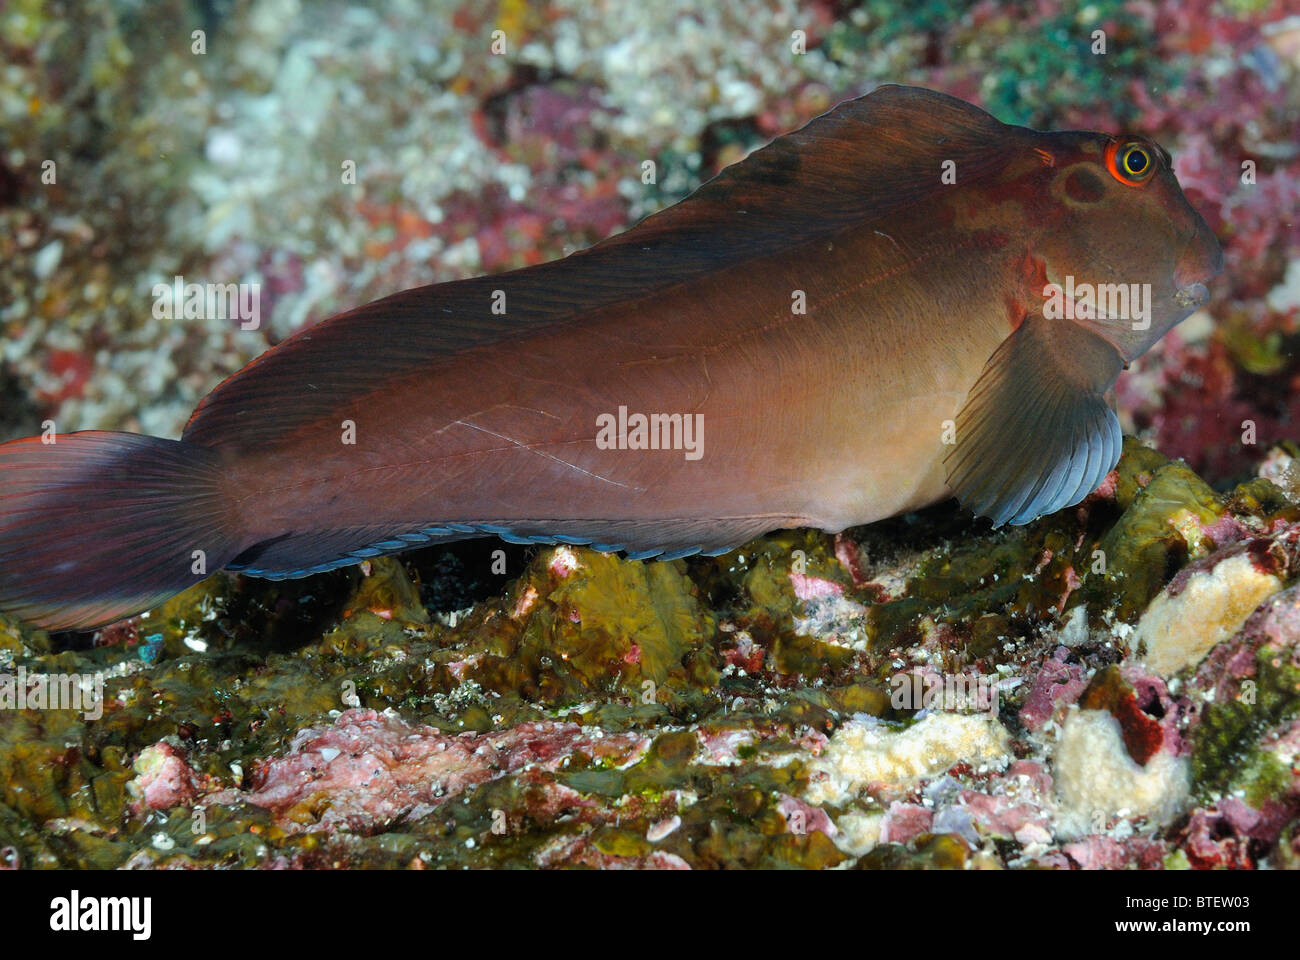 Panamic fanged blenny fish, Galapagos, Ecuador Stock Photo